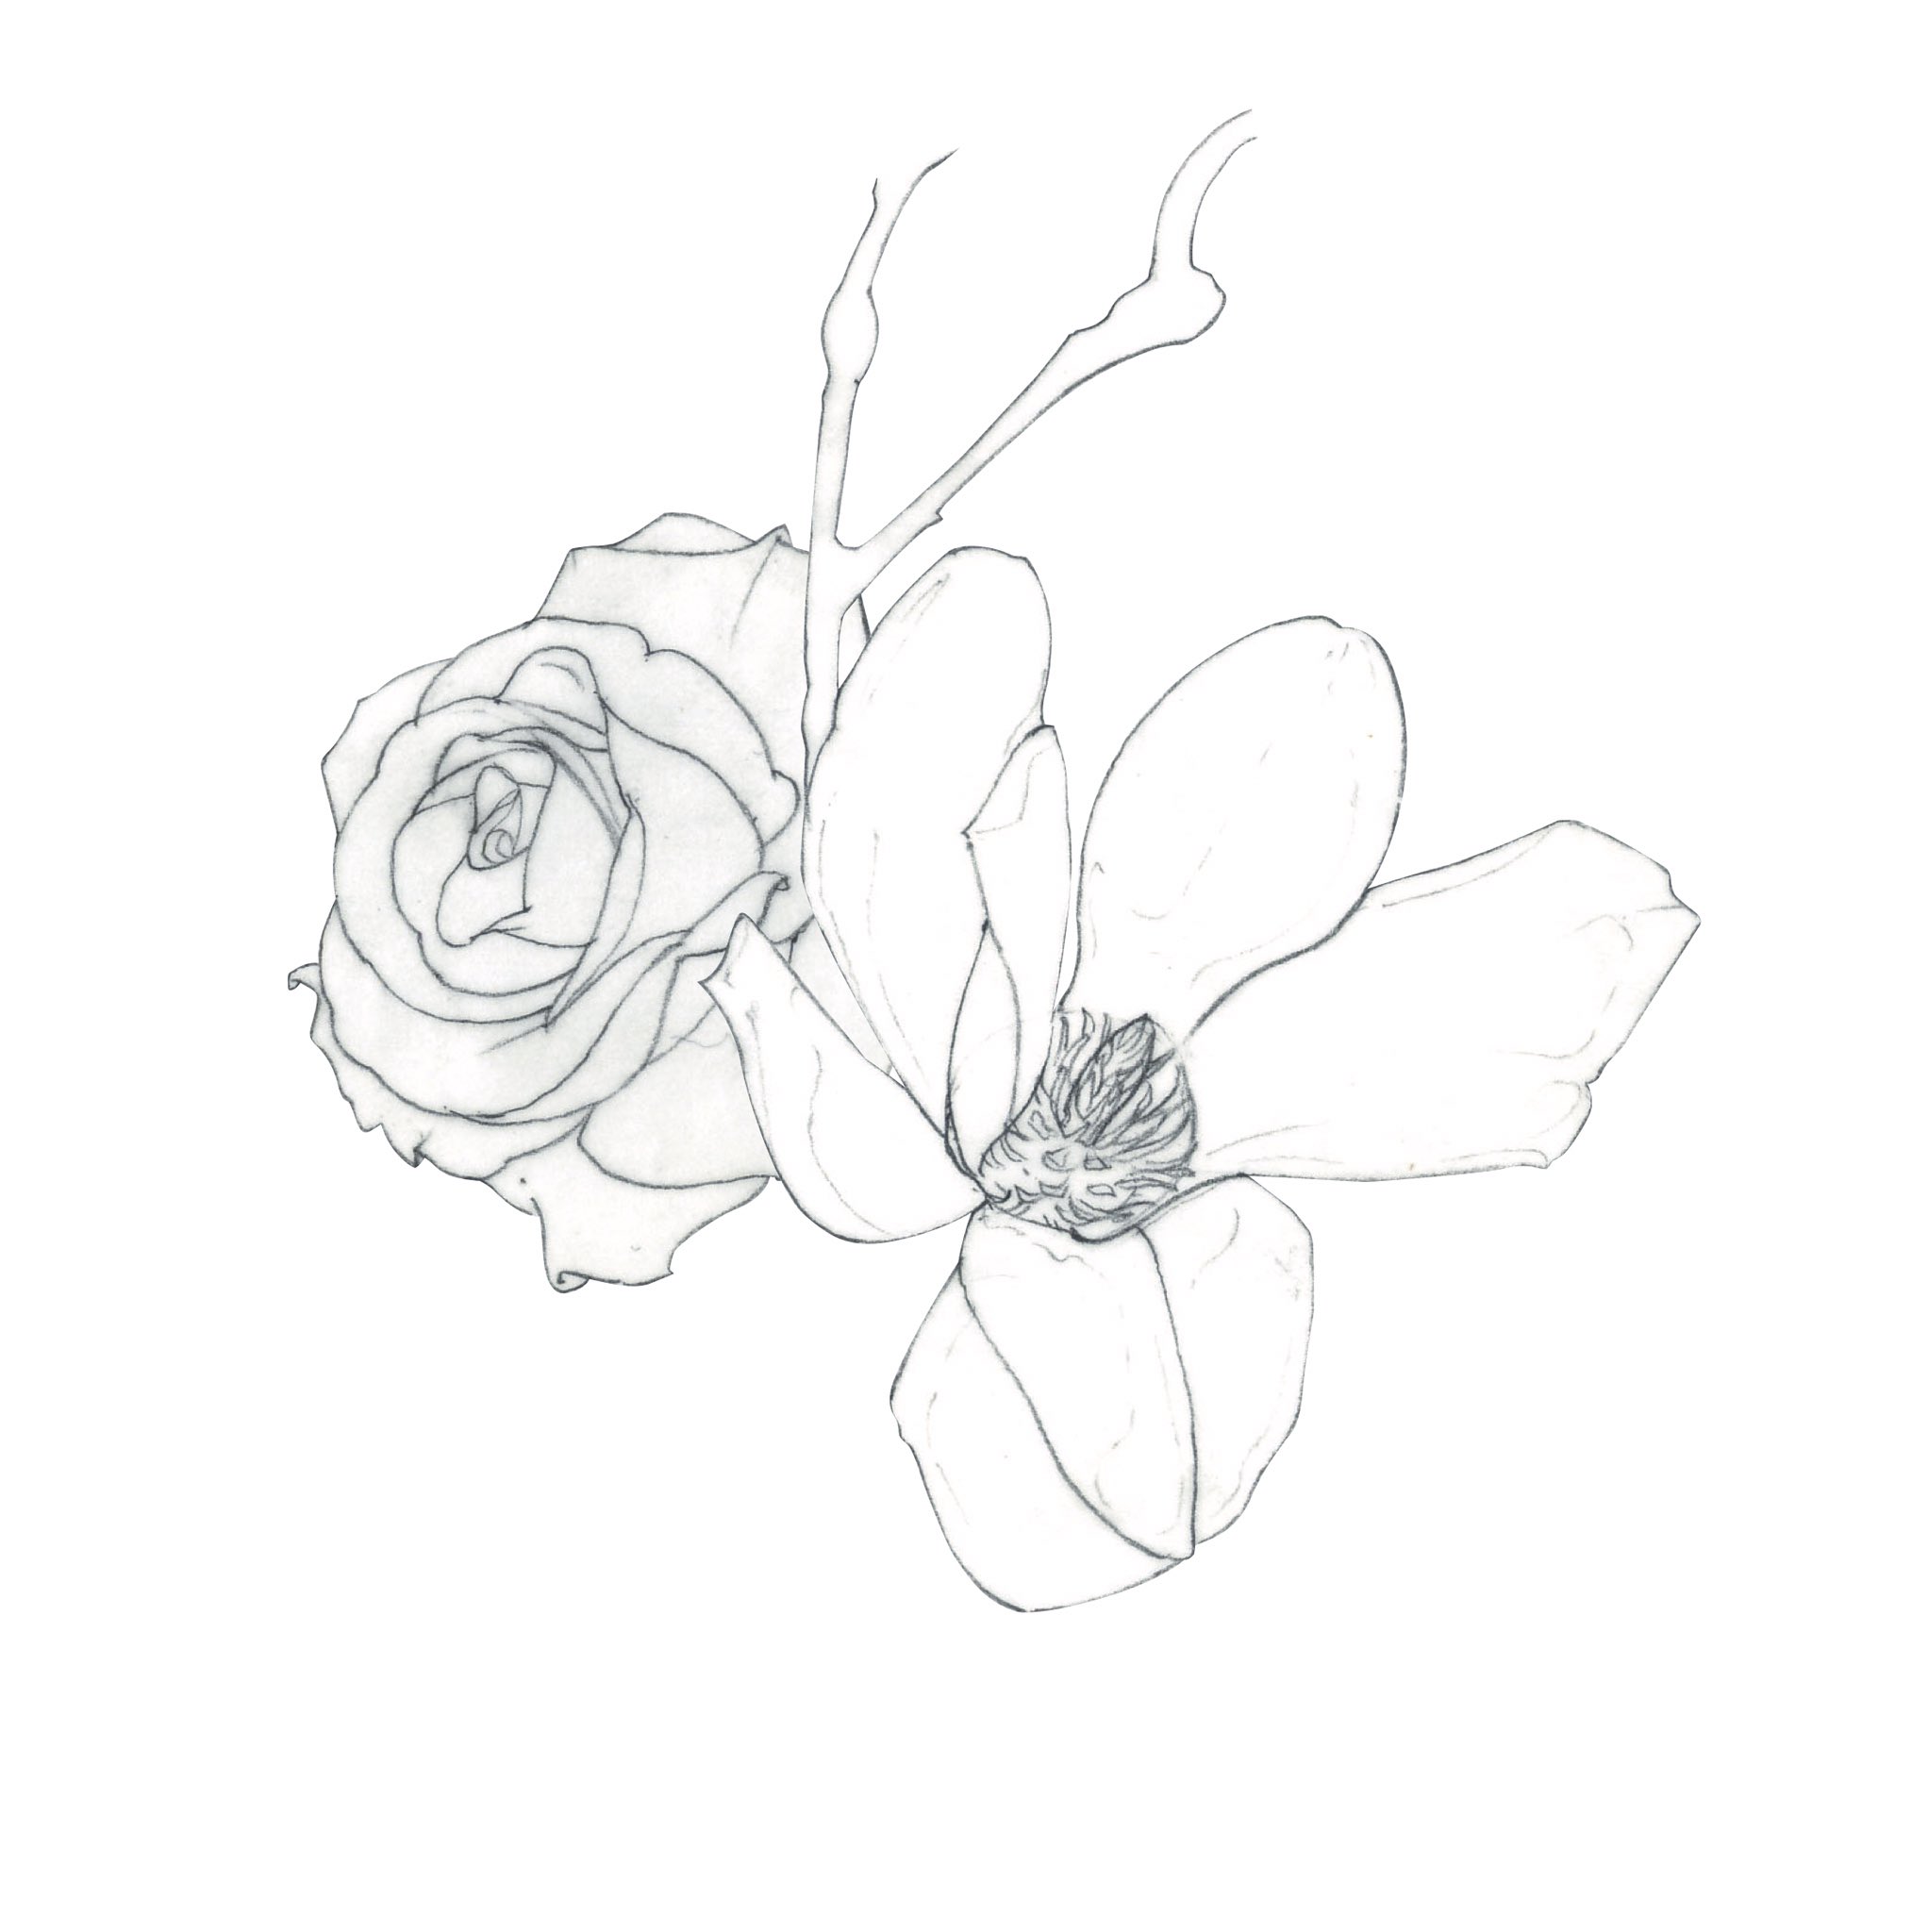 Shino Al Twitter 花の絵を鉛筆で描く 絵を描くのは好きだが 美しい配置が分からない 活け花とか フラワーアレンジメントとか そっちの才能も必要なのか 習っとけば良かった 機会があれば活け花教室でも行こうか Illustration Art 花の絵 イラスト